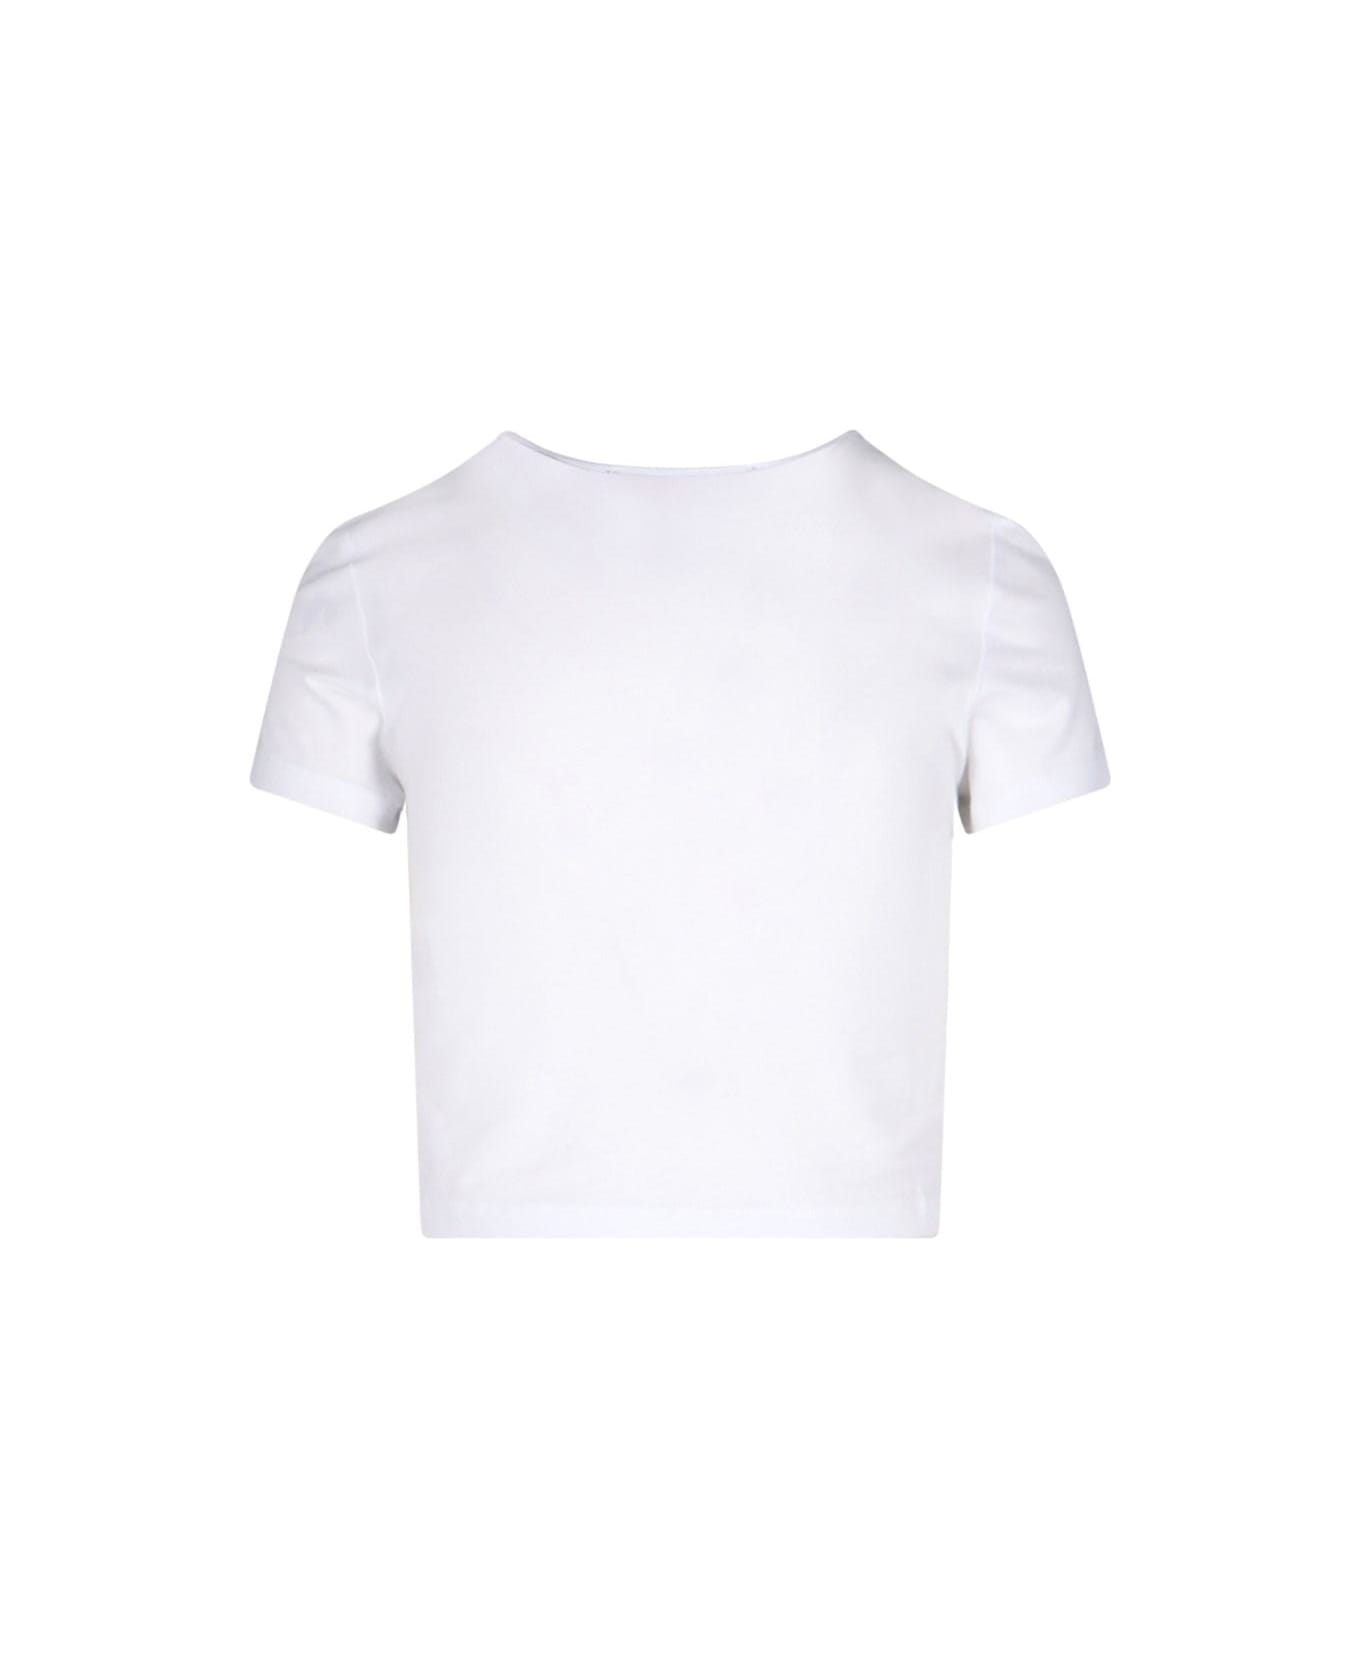 Rotate by Birger Christensen Logo Crop T-shirt - Bright white Tシャツ